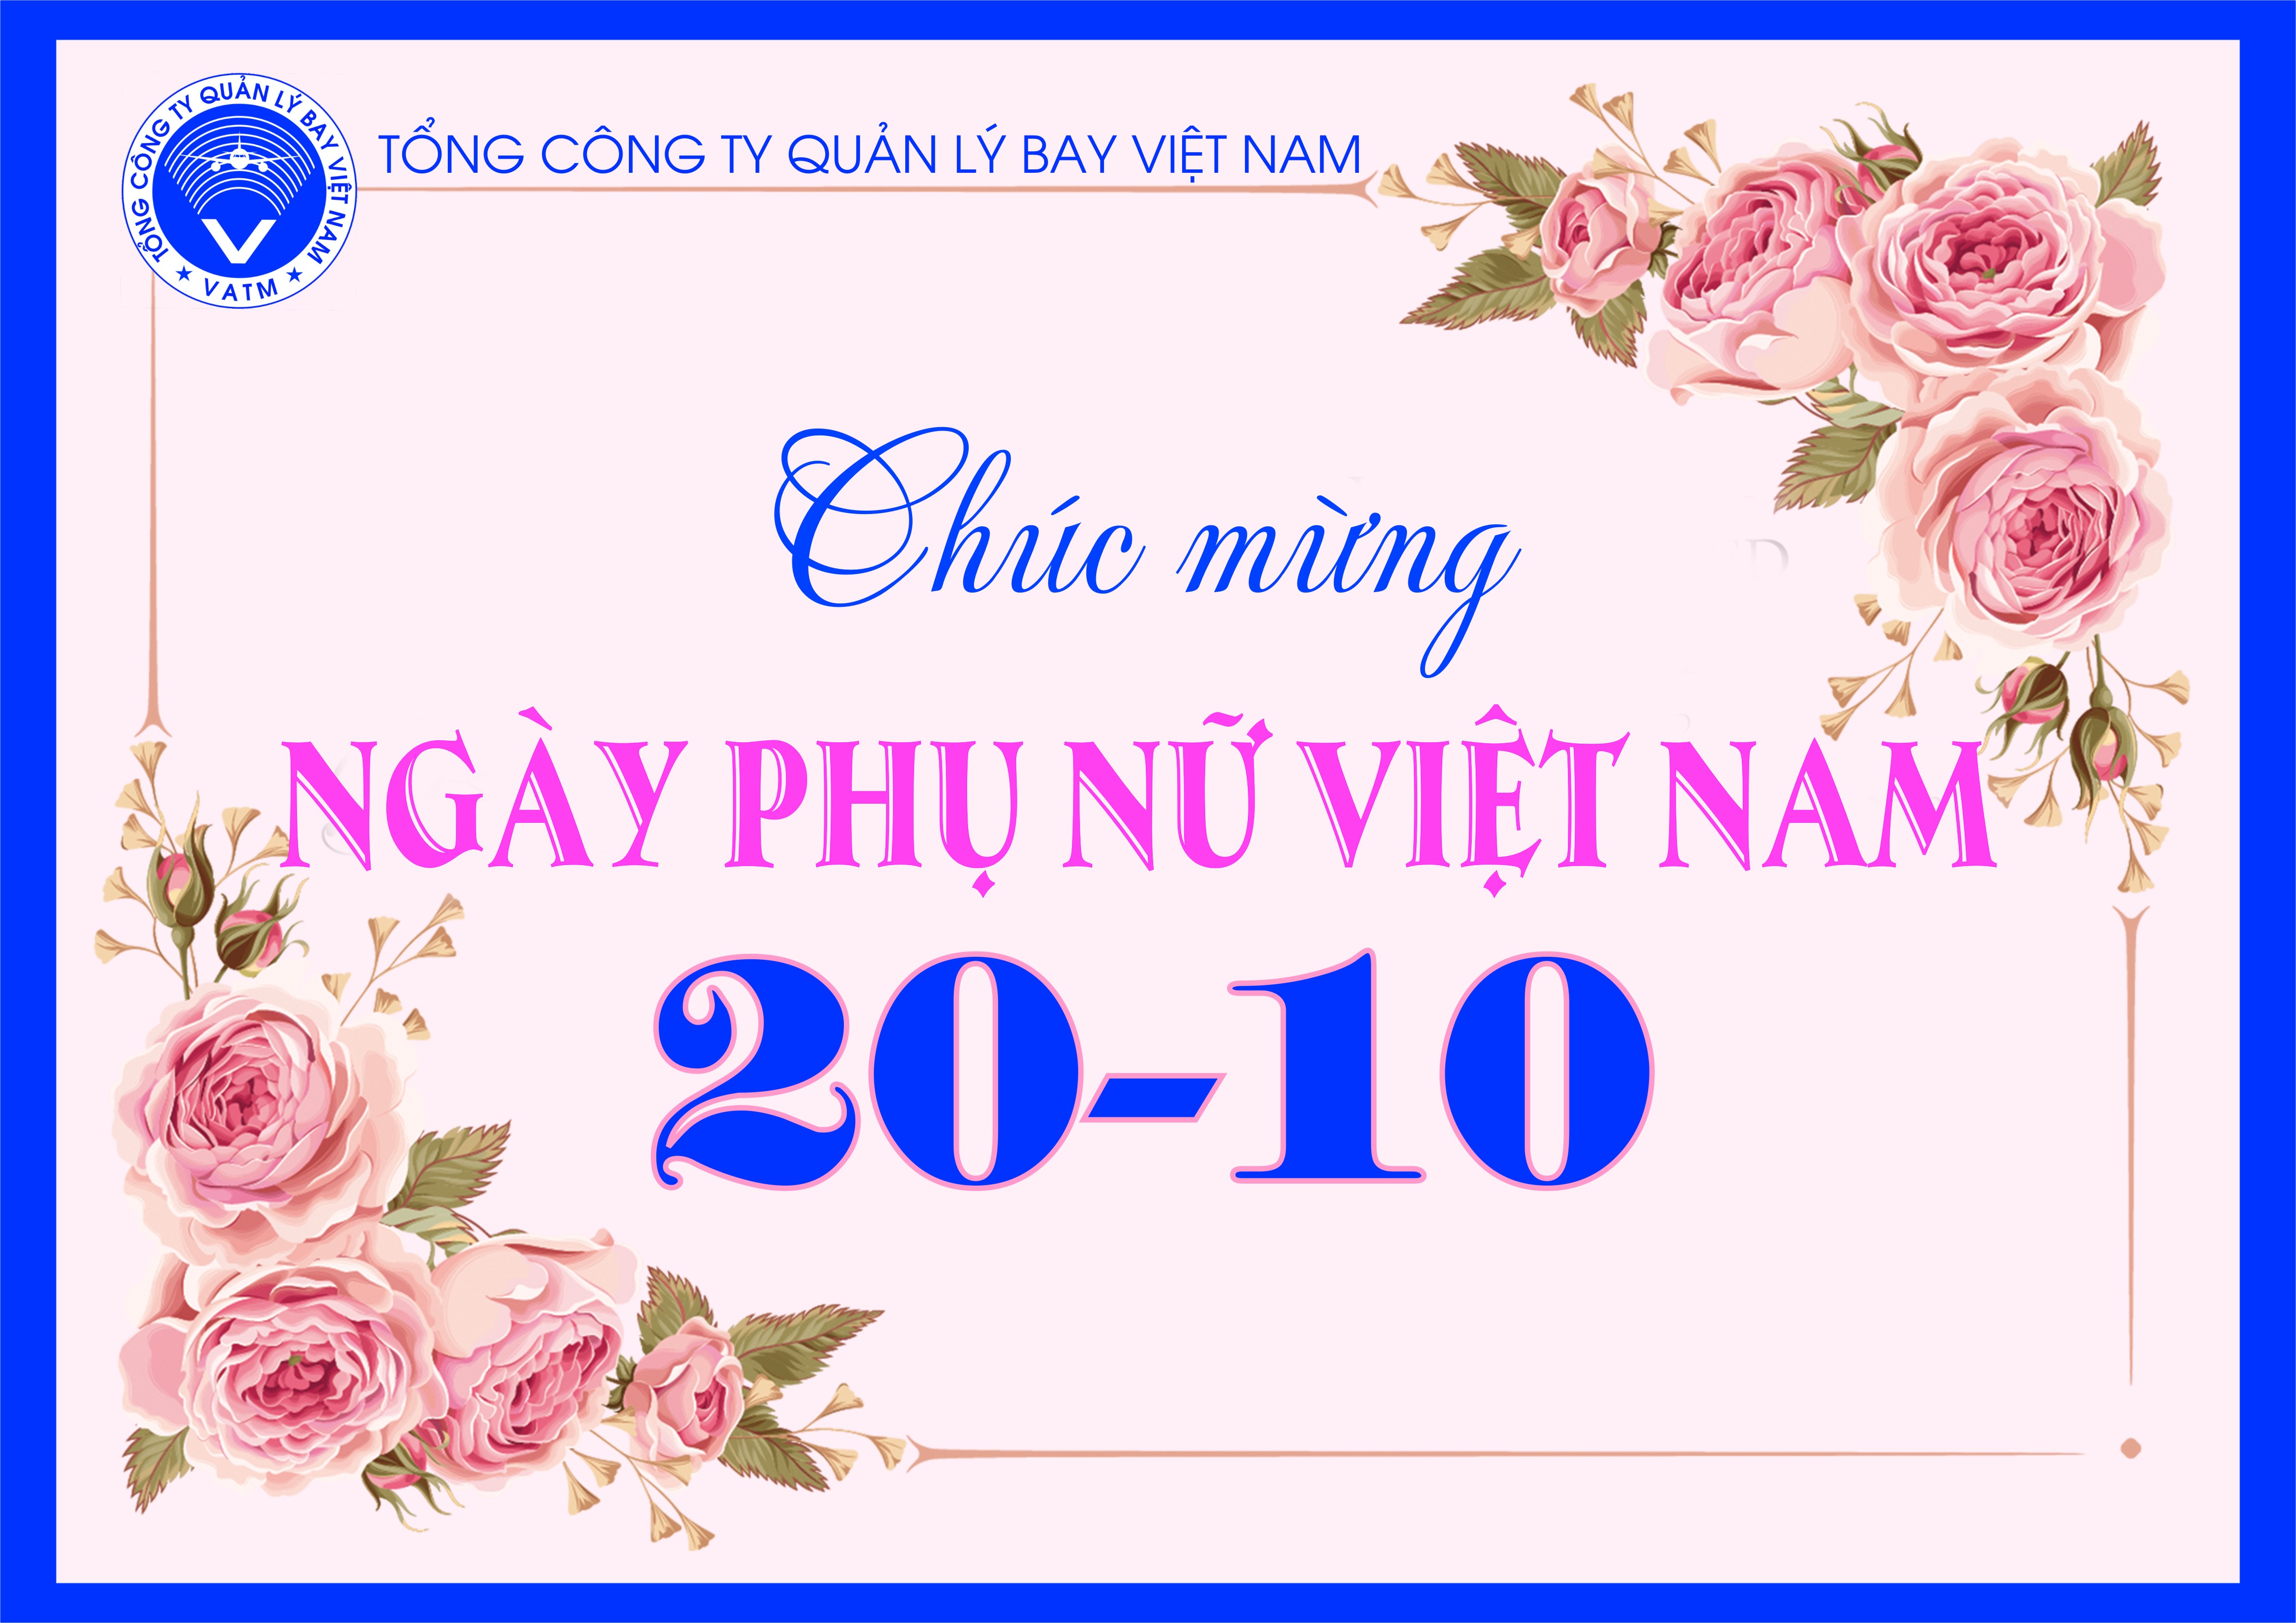 Ngày Phụ Nữ Việt Nam 2024 đang đến gần, hãy chúc mừng những người phụ nữ trong cuộc sống của bạn bằng những lời chúc tốt đẹp nhất. Hãy cùng nhau tôn vinh và ghi nhận những đóng góp to lớn của phụ nữ đối với xã hội.